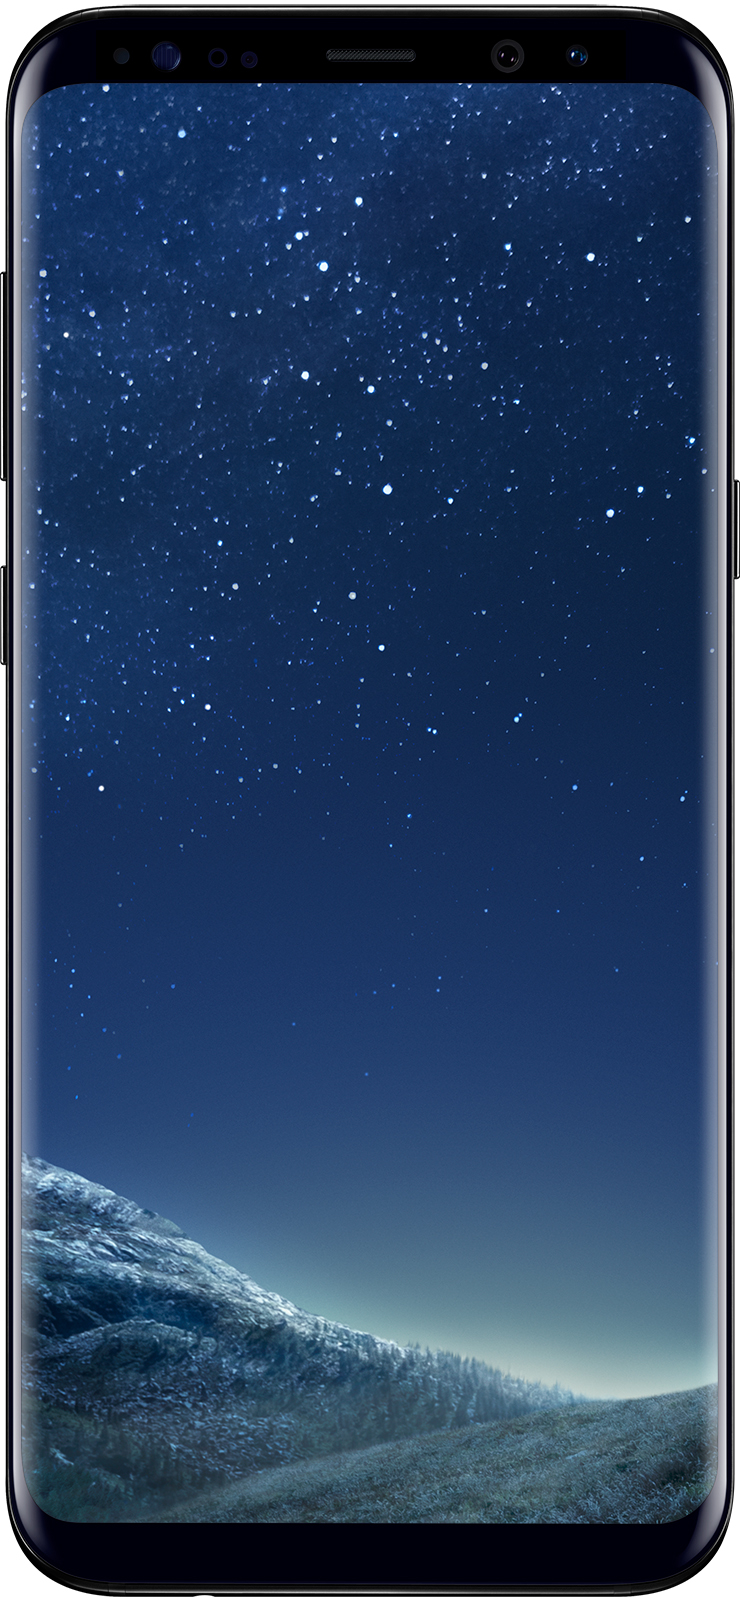 
Рекомендуем:
Samsung Galaxy S8 plus от компании KDmarket.ru
